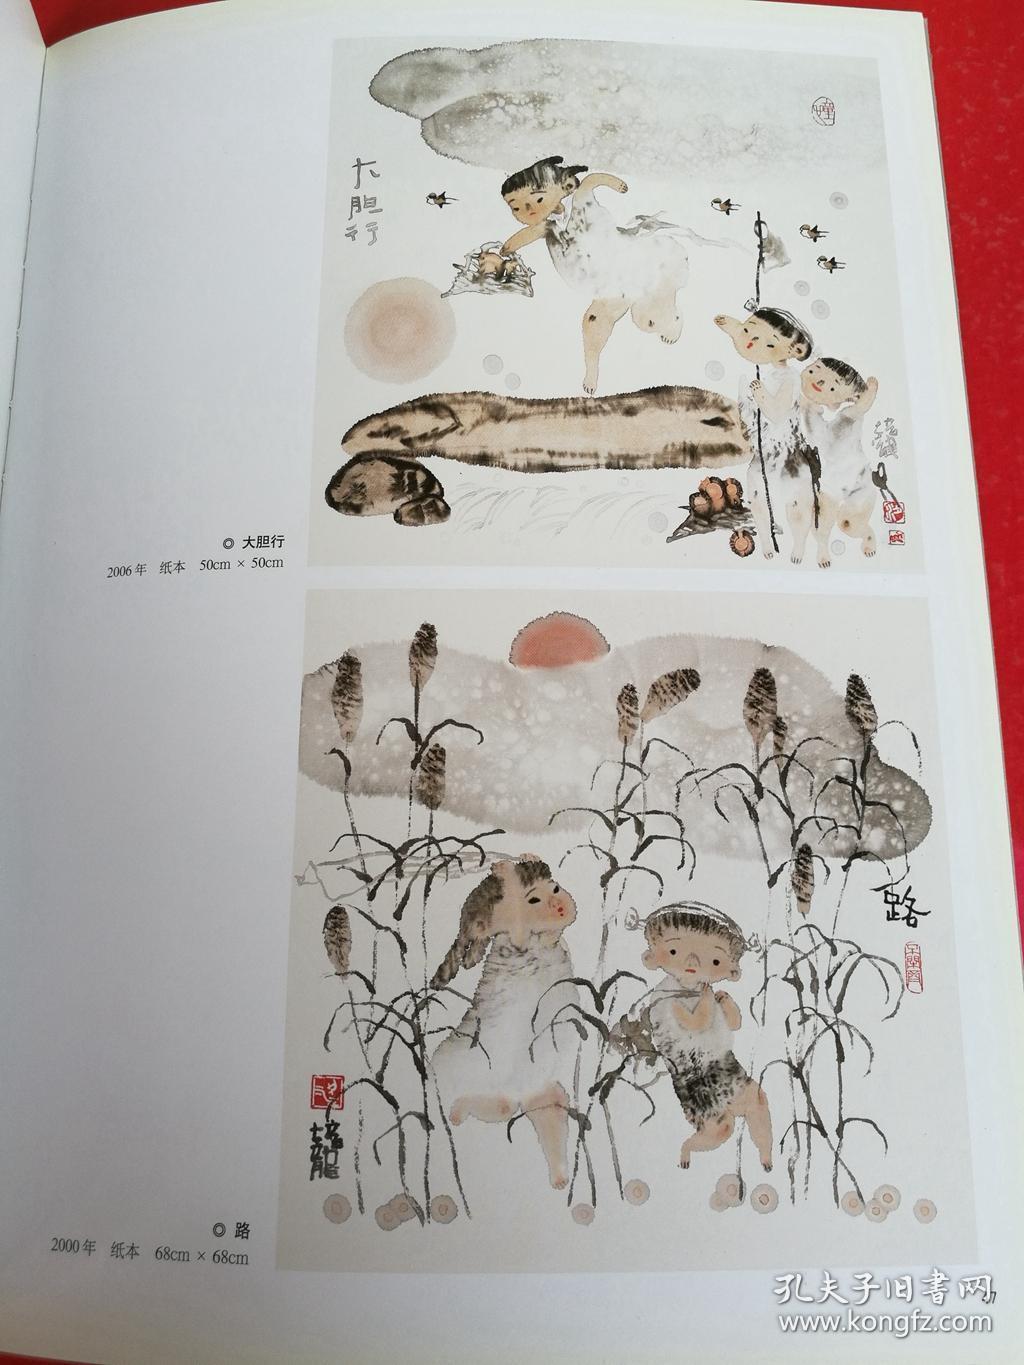 梁培龙水墨人物画作品集 童子童趣 舞蹈人物 当代中国人物画坛10名家